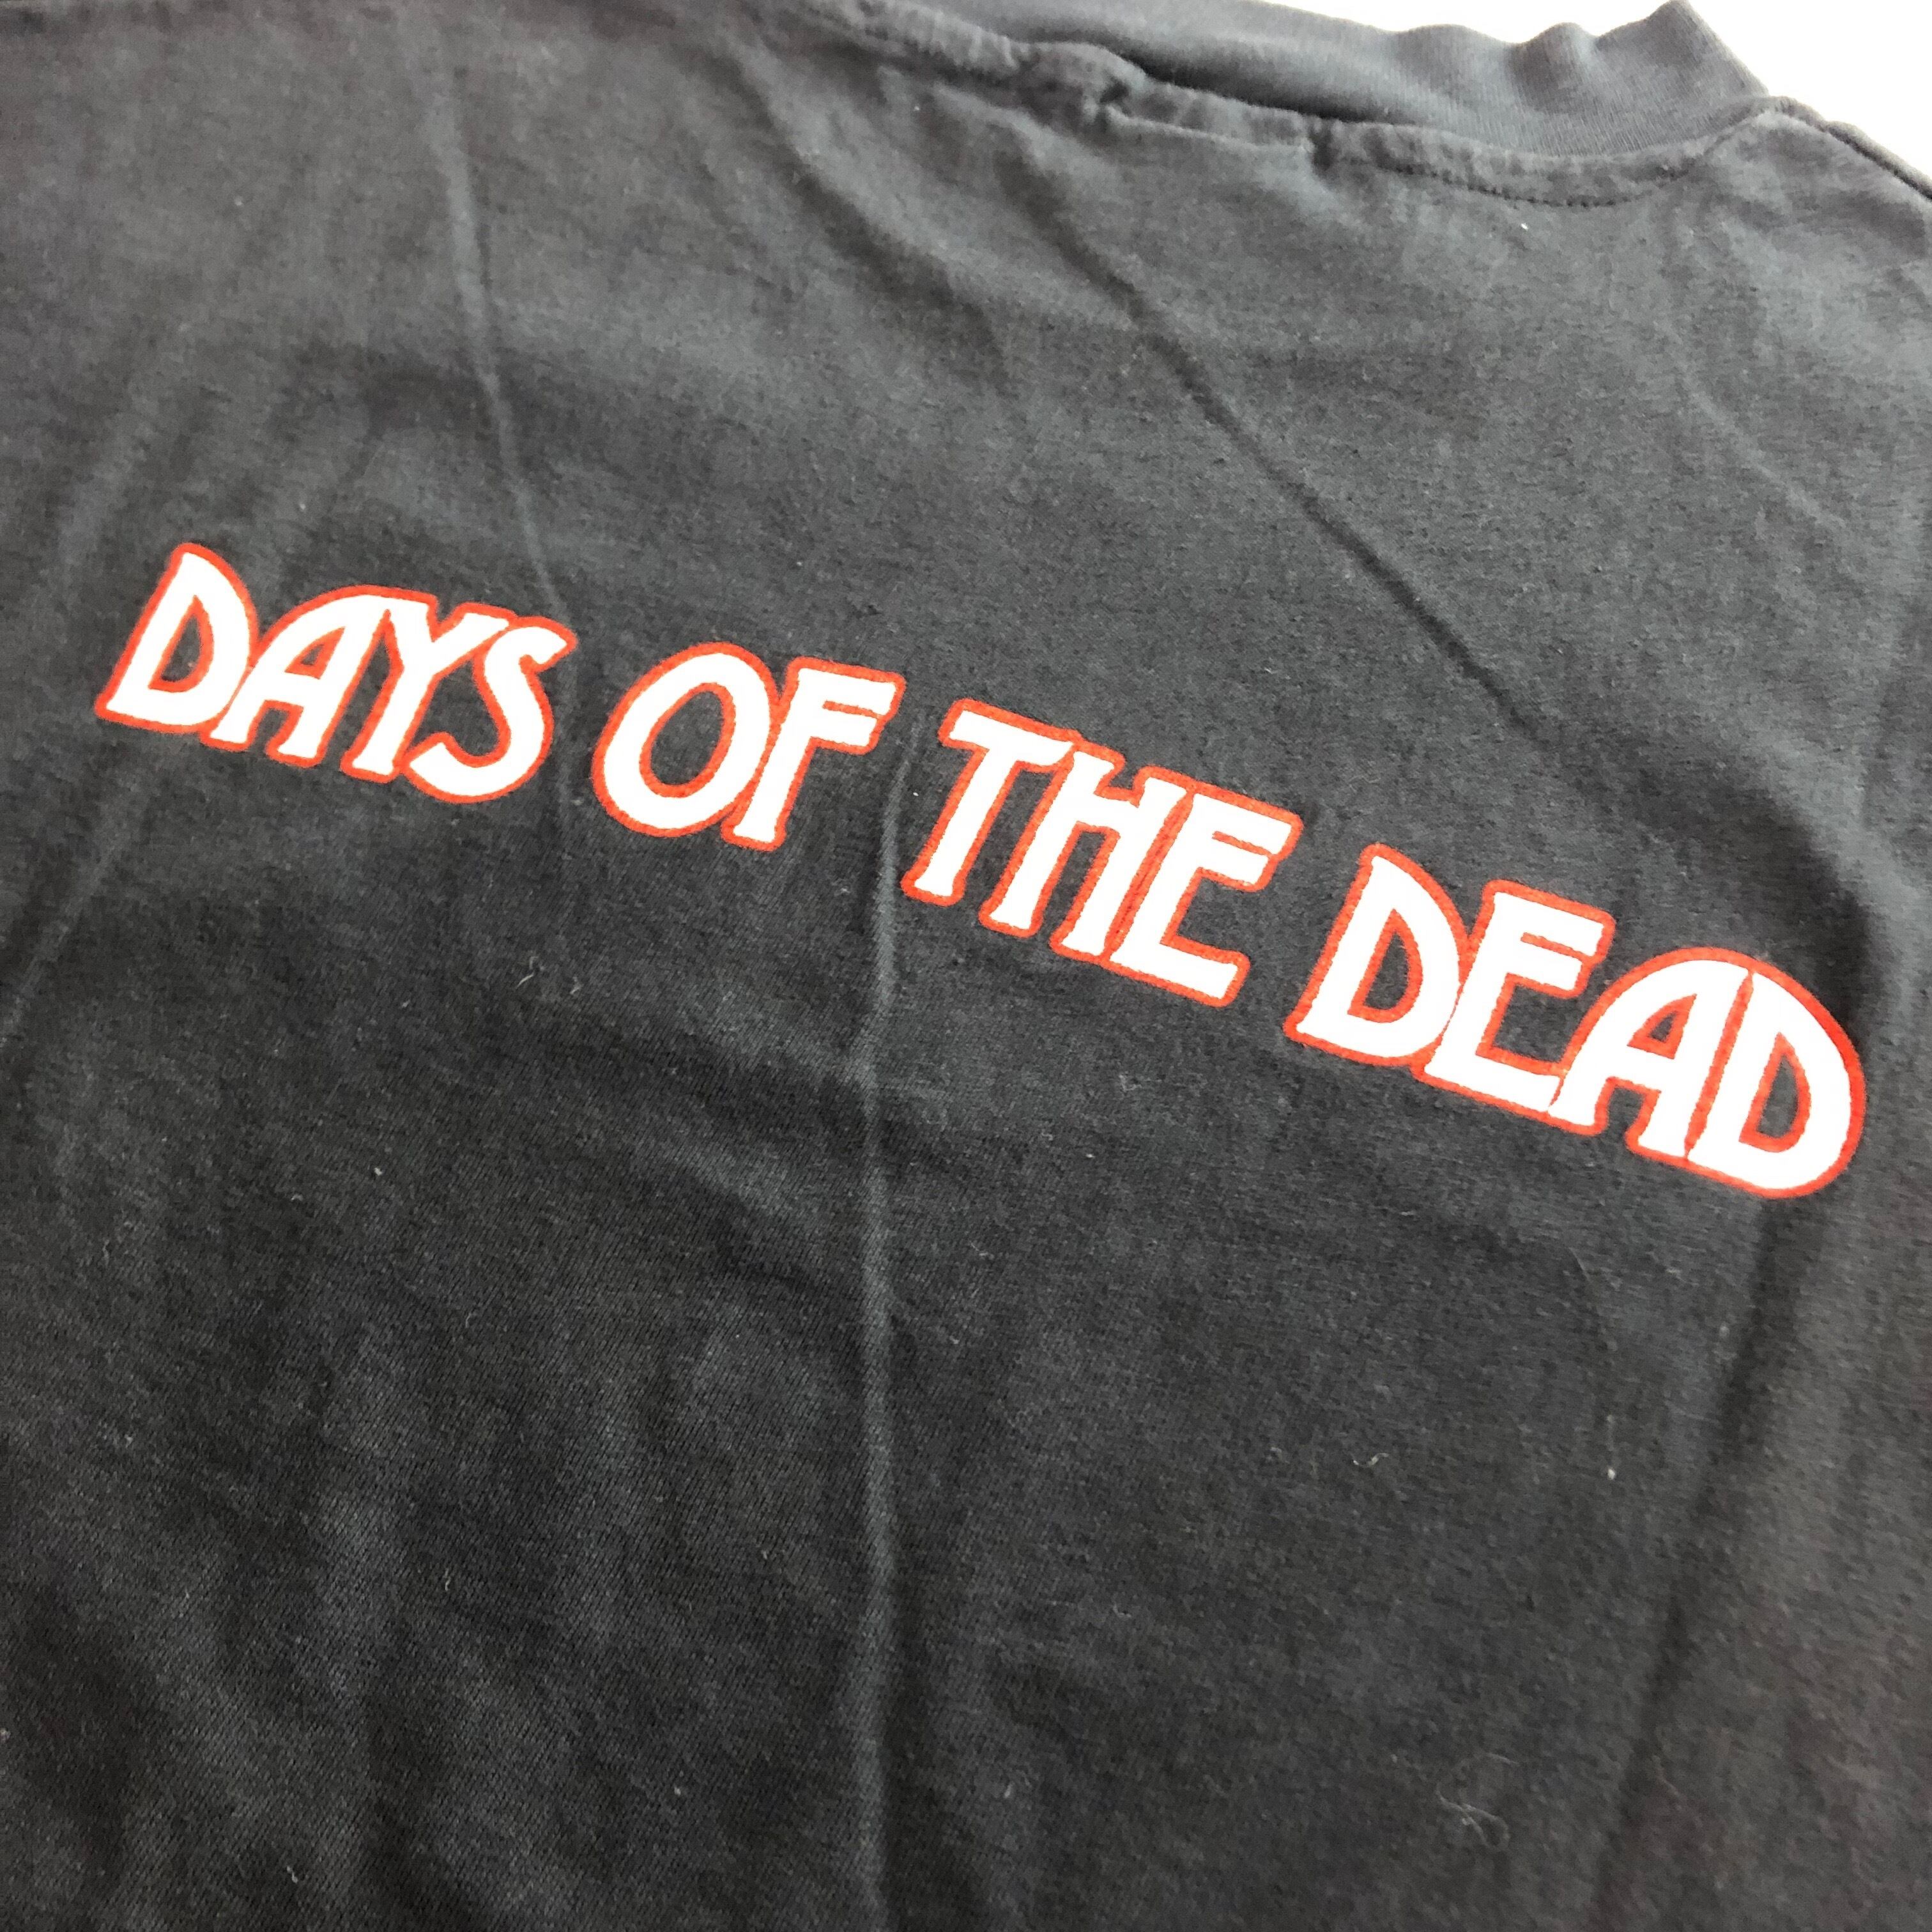 80's ヴィンテージ グレイトフルデッド Tシャツ GREATFUL DEAD DAYS OF